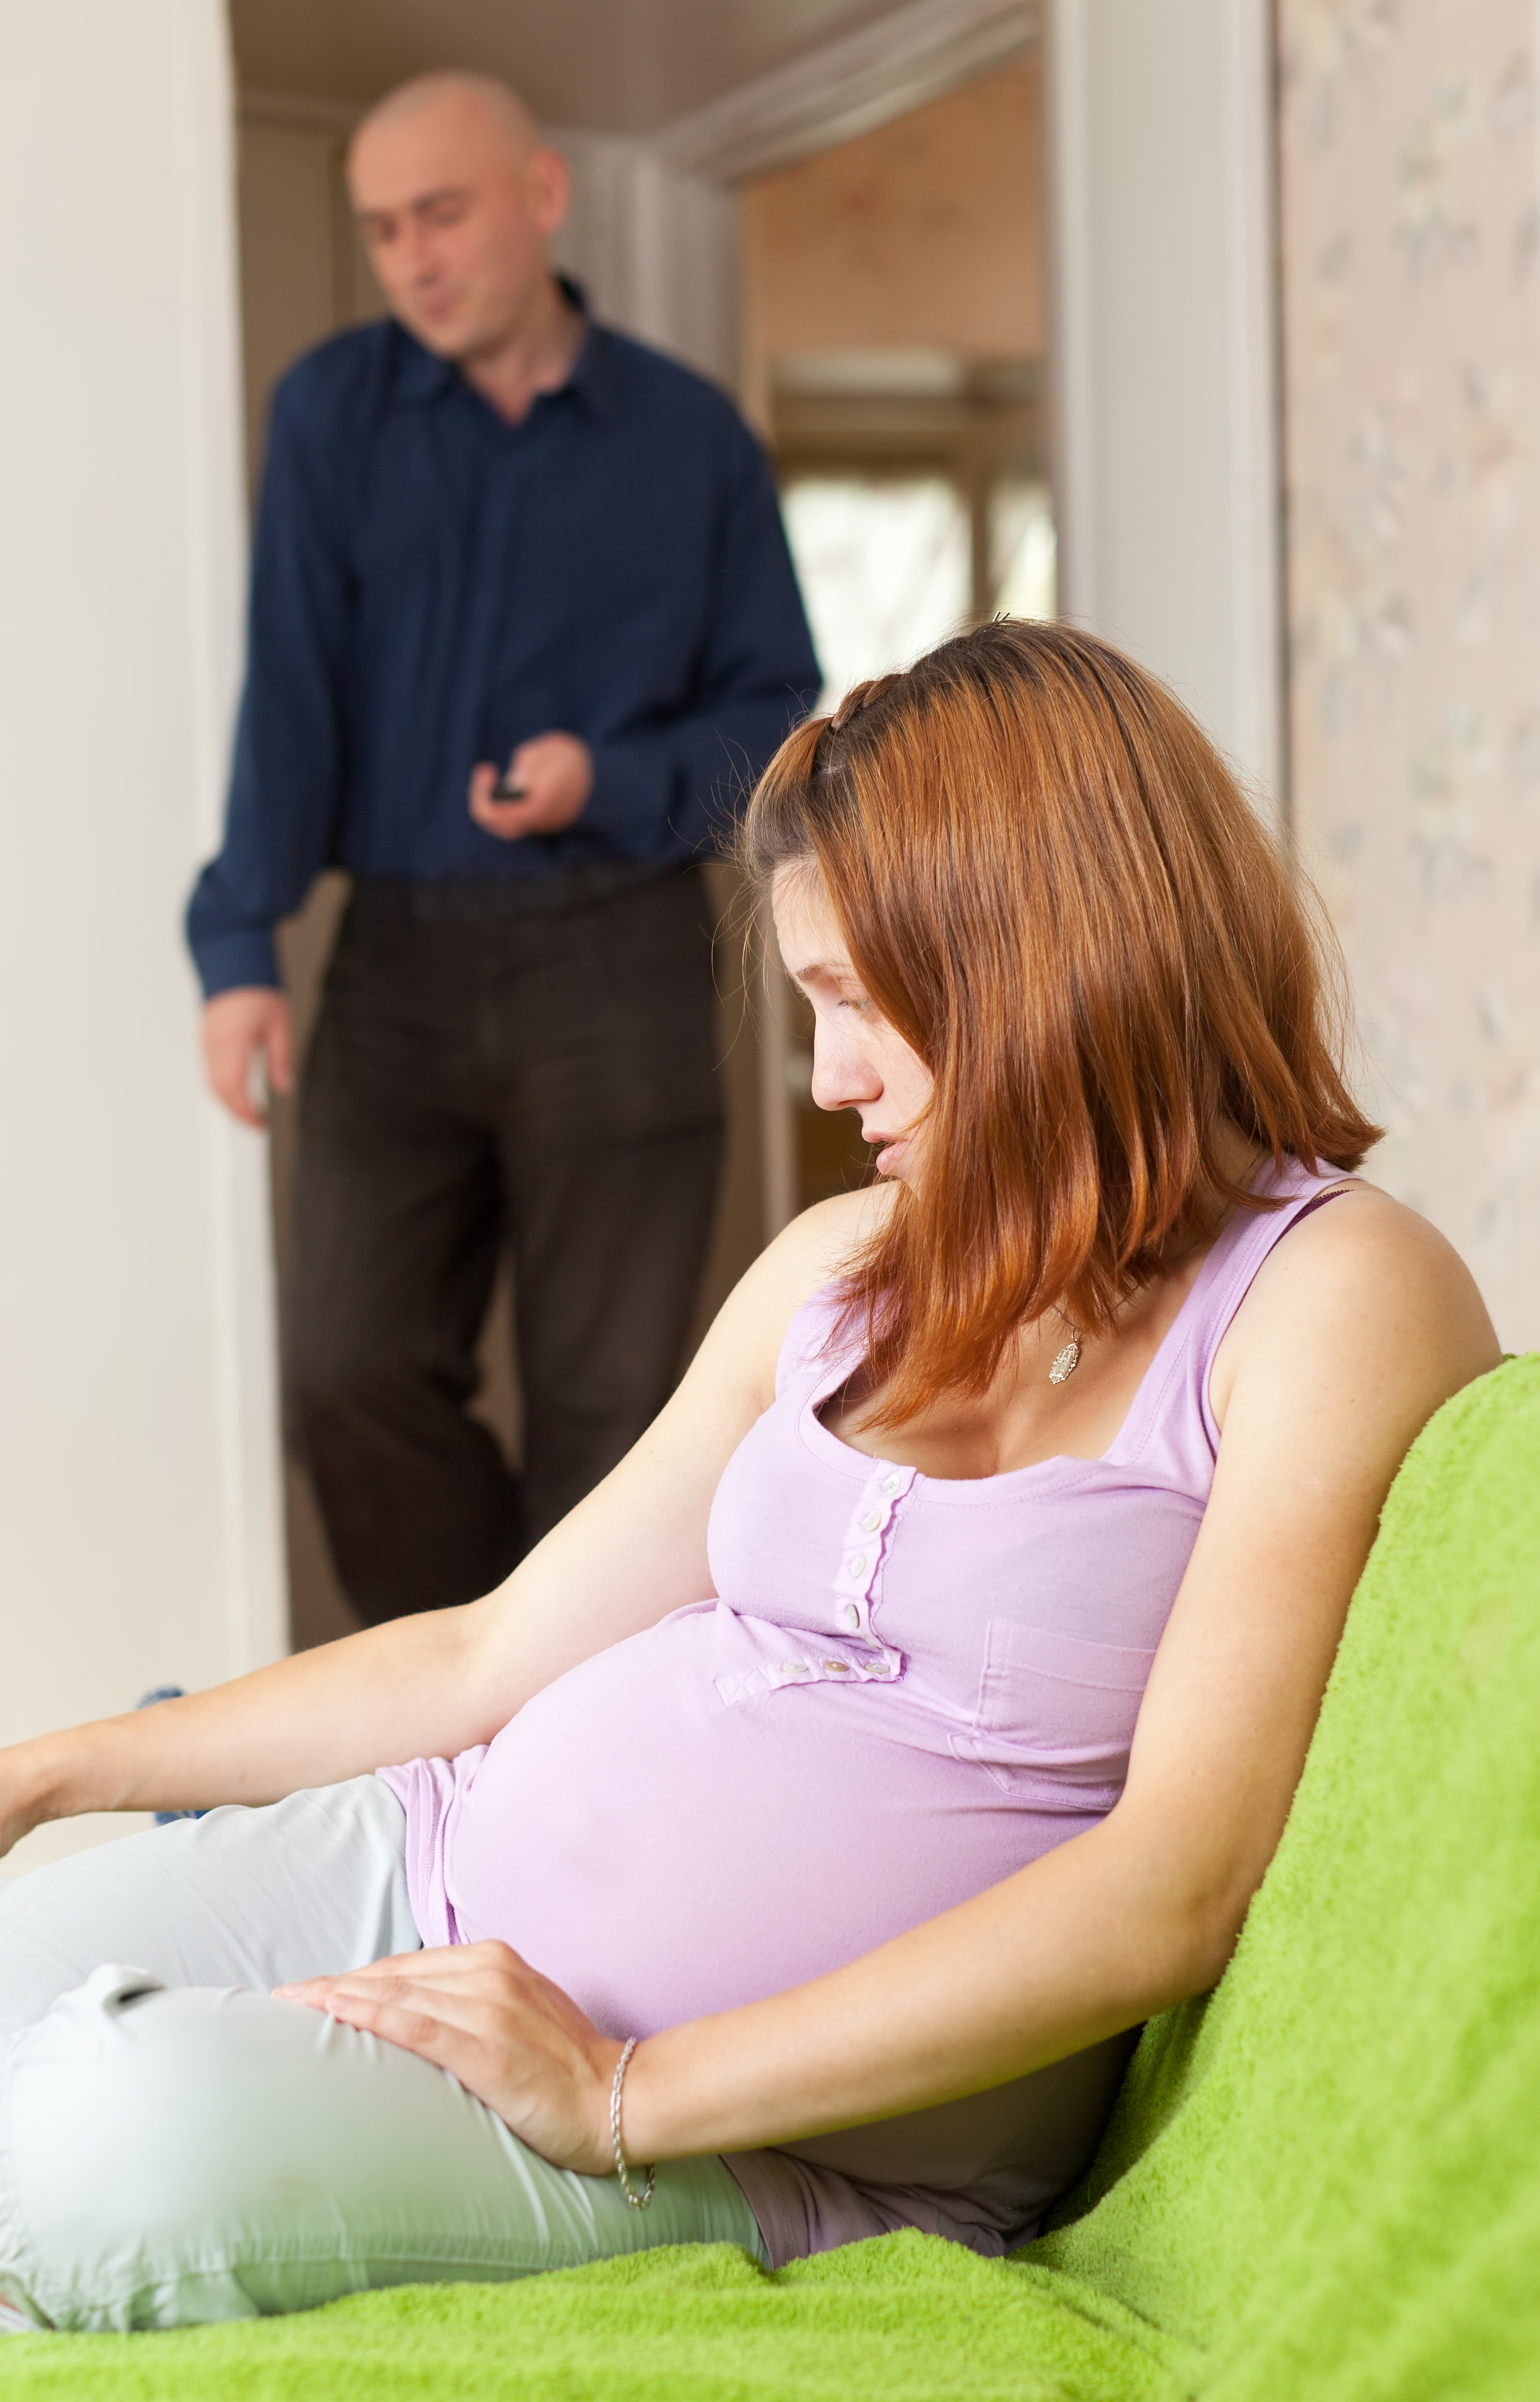 Mujer embarazada y un hombre al fondo | Fuente: Shutterstock